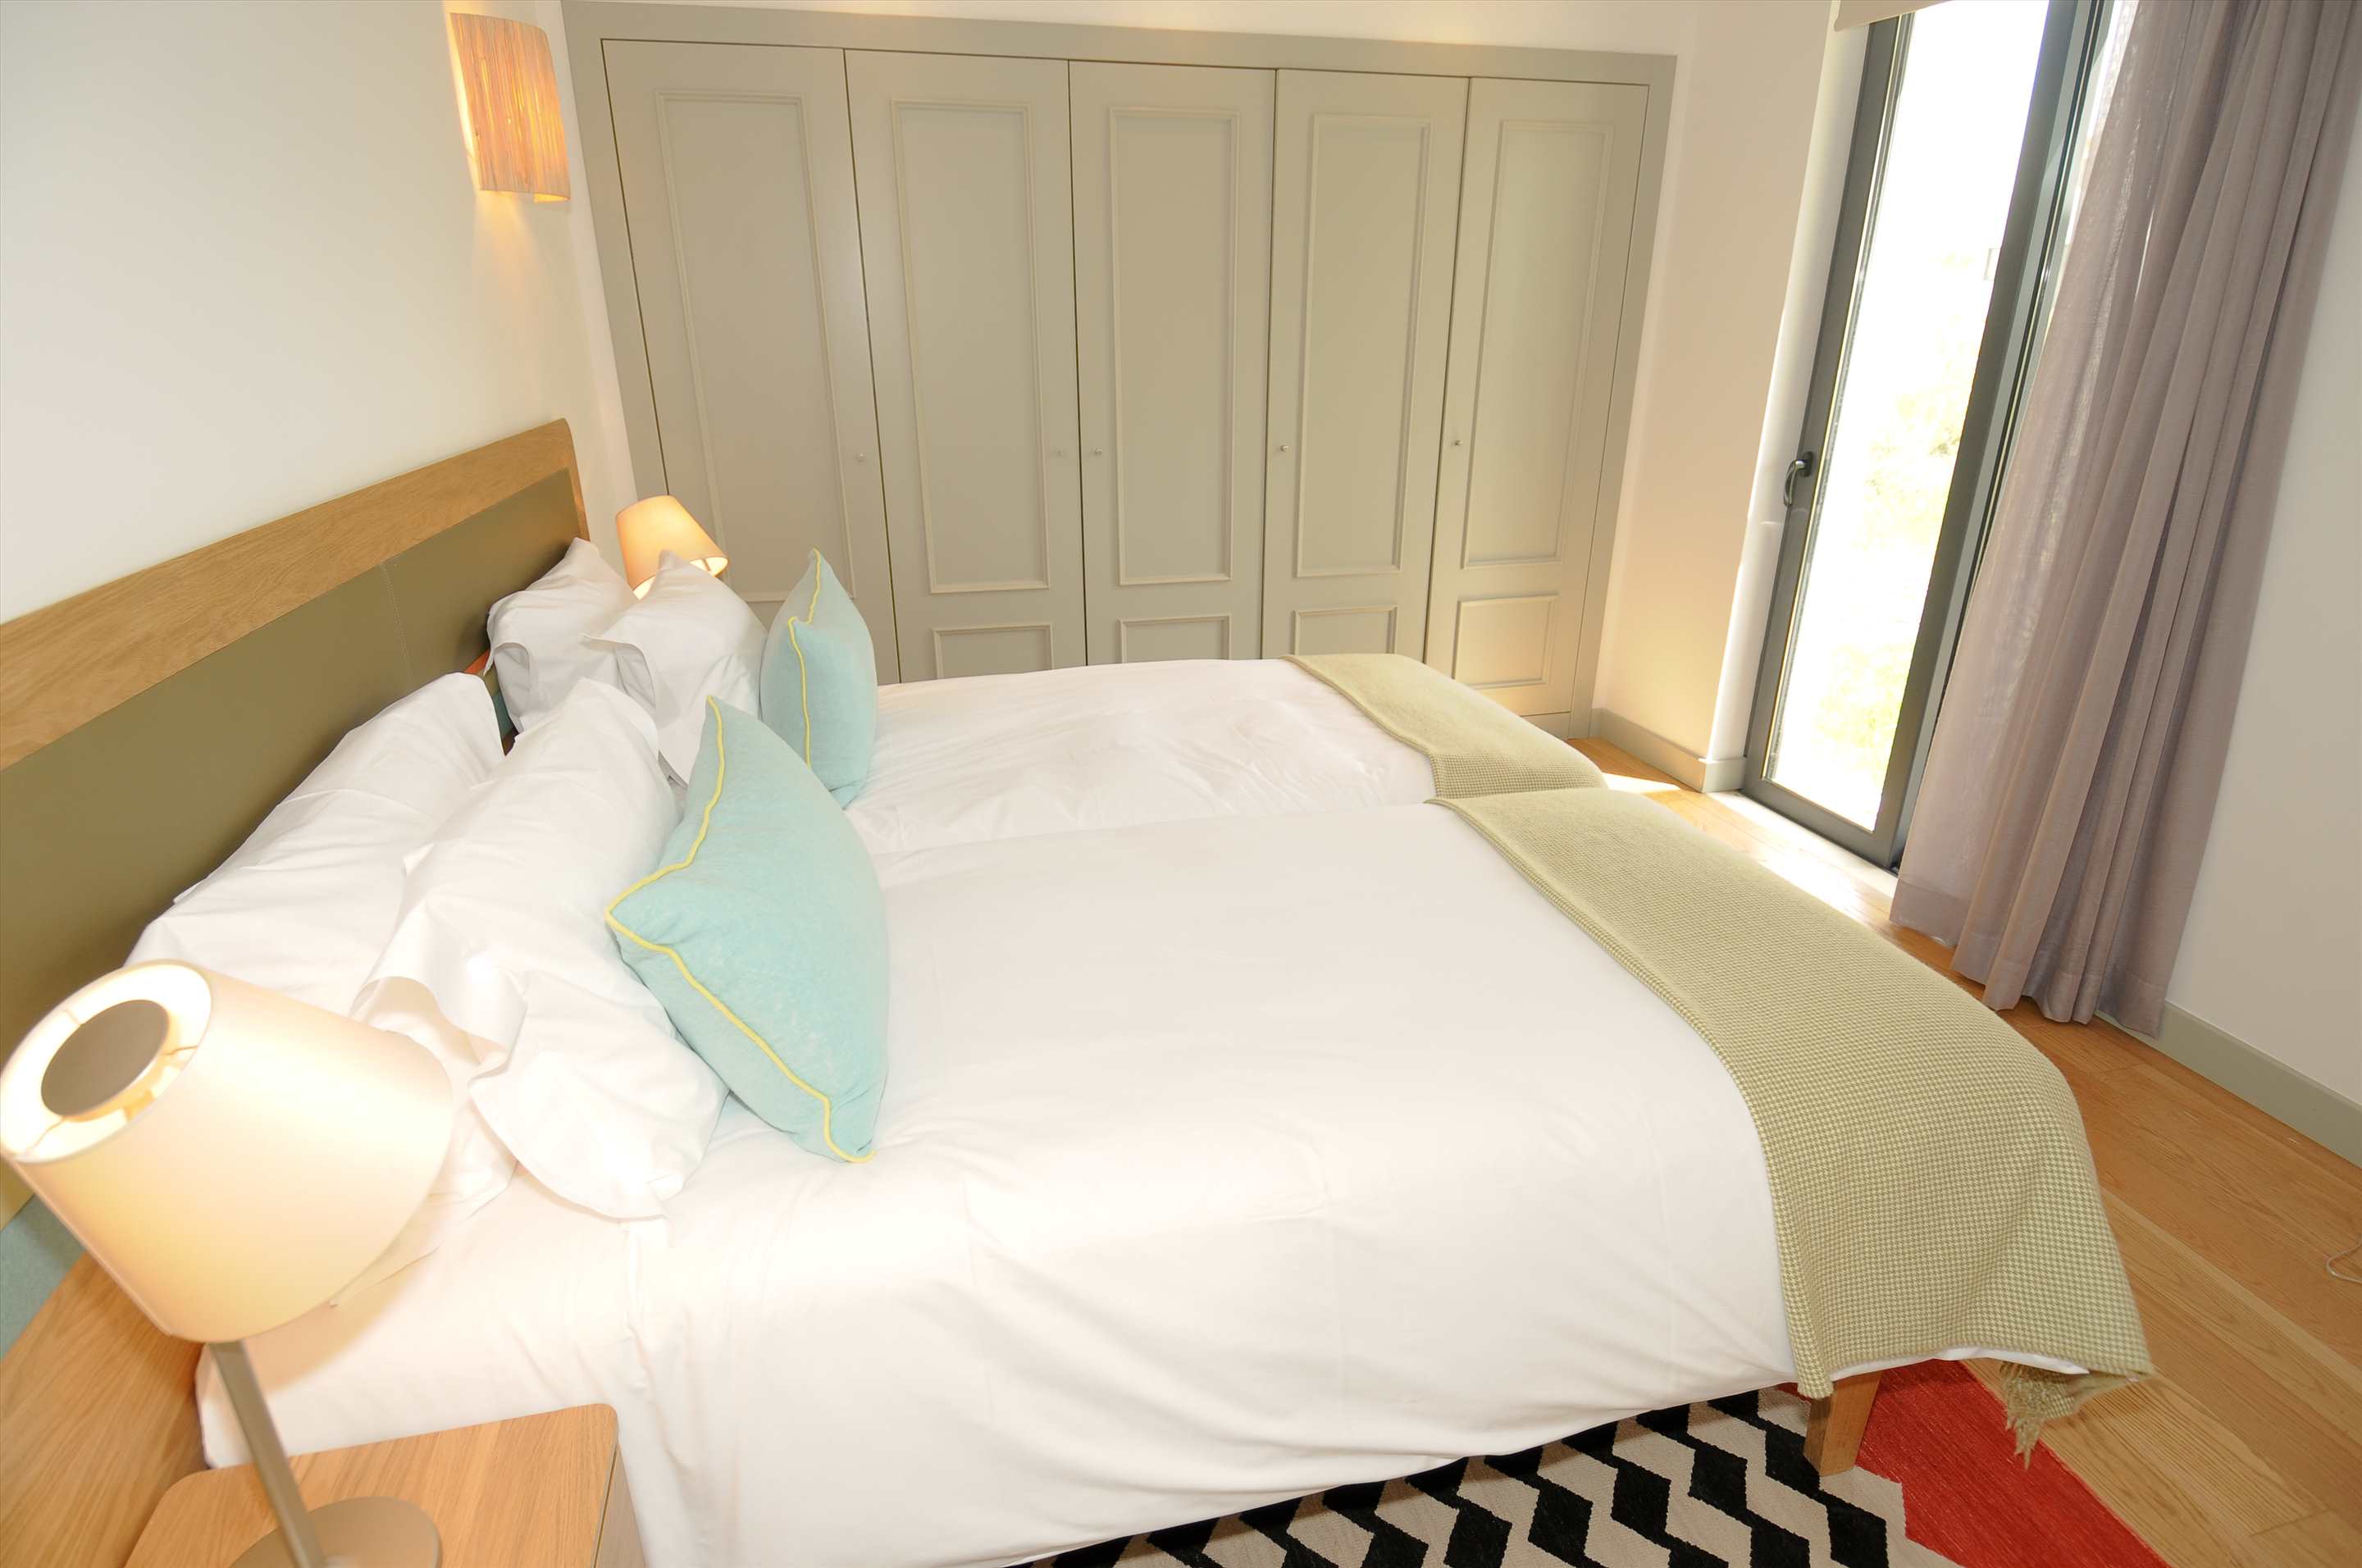 Martinhal Village Garden House, Deluxe One Bedroom plus Bunk Bed, 1 bedroom villa in Martinhal Sagres, Algarve Photo #7